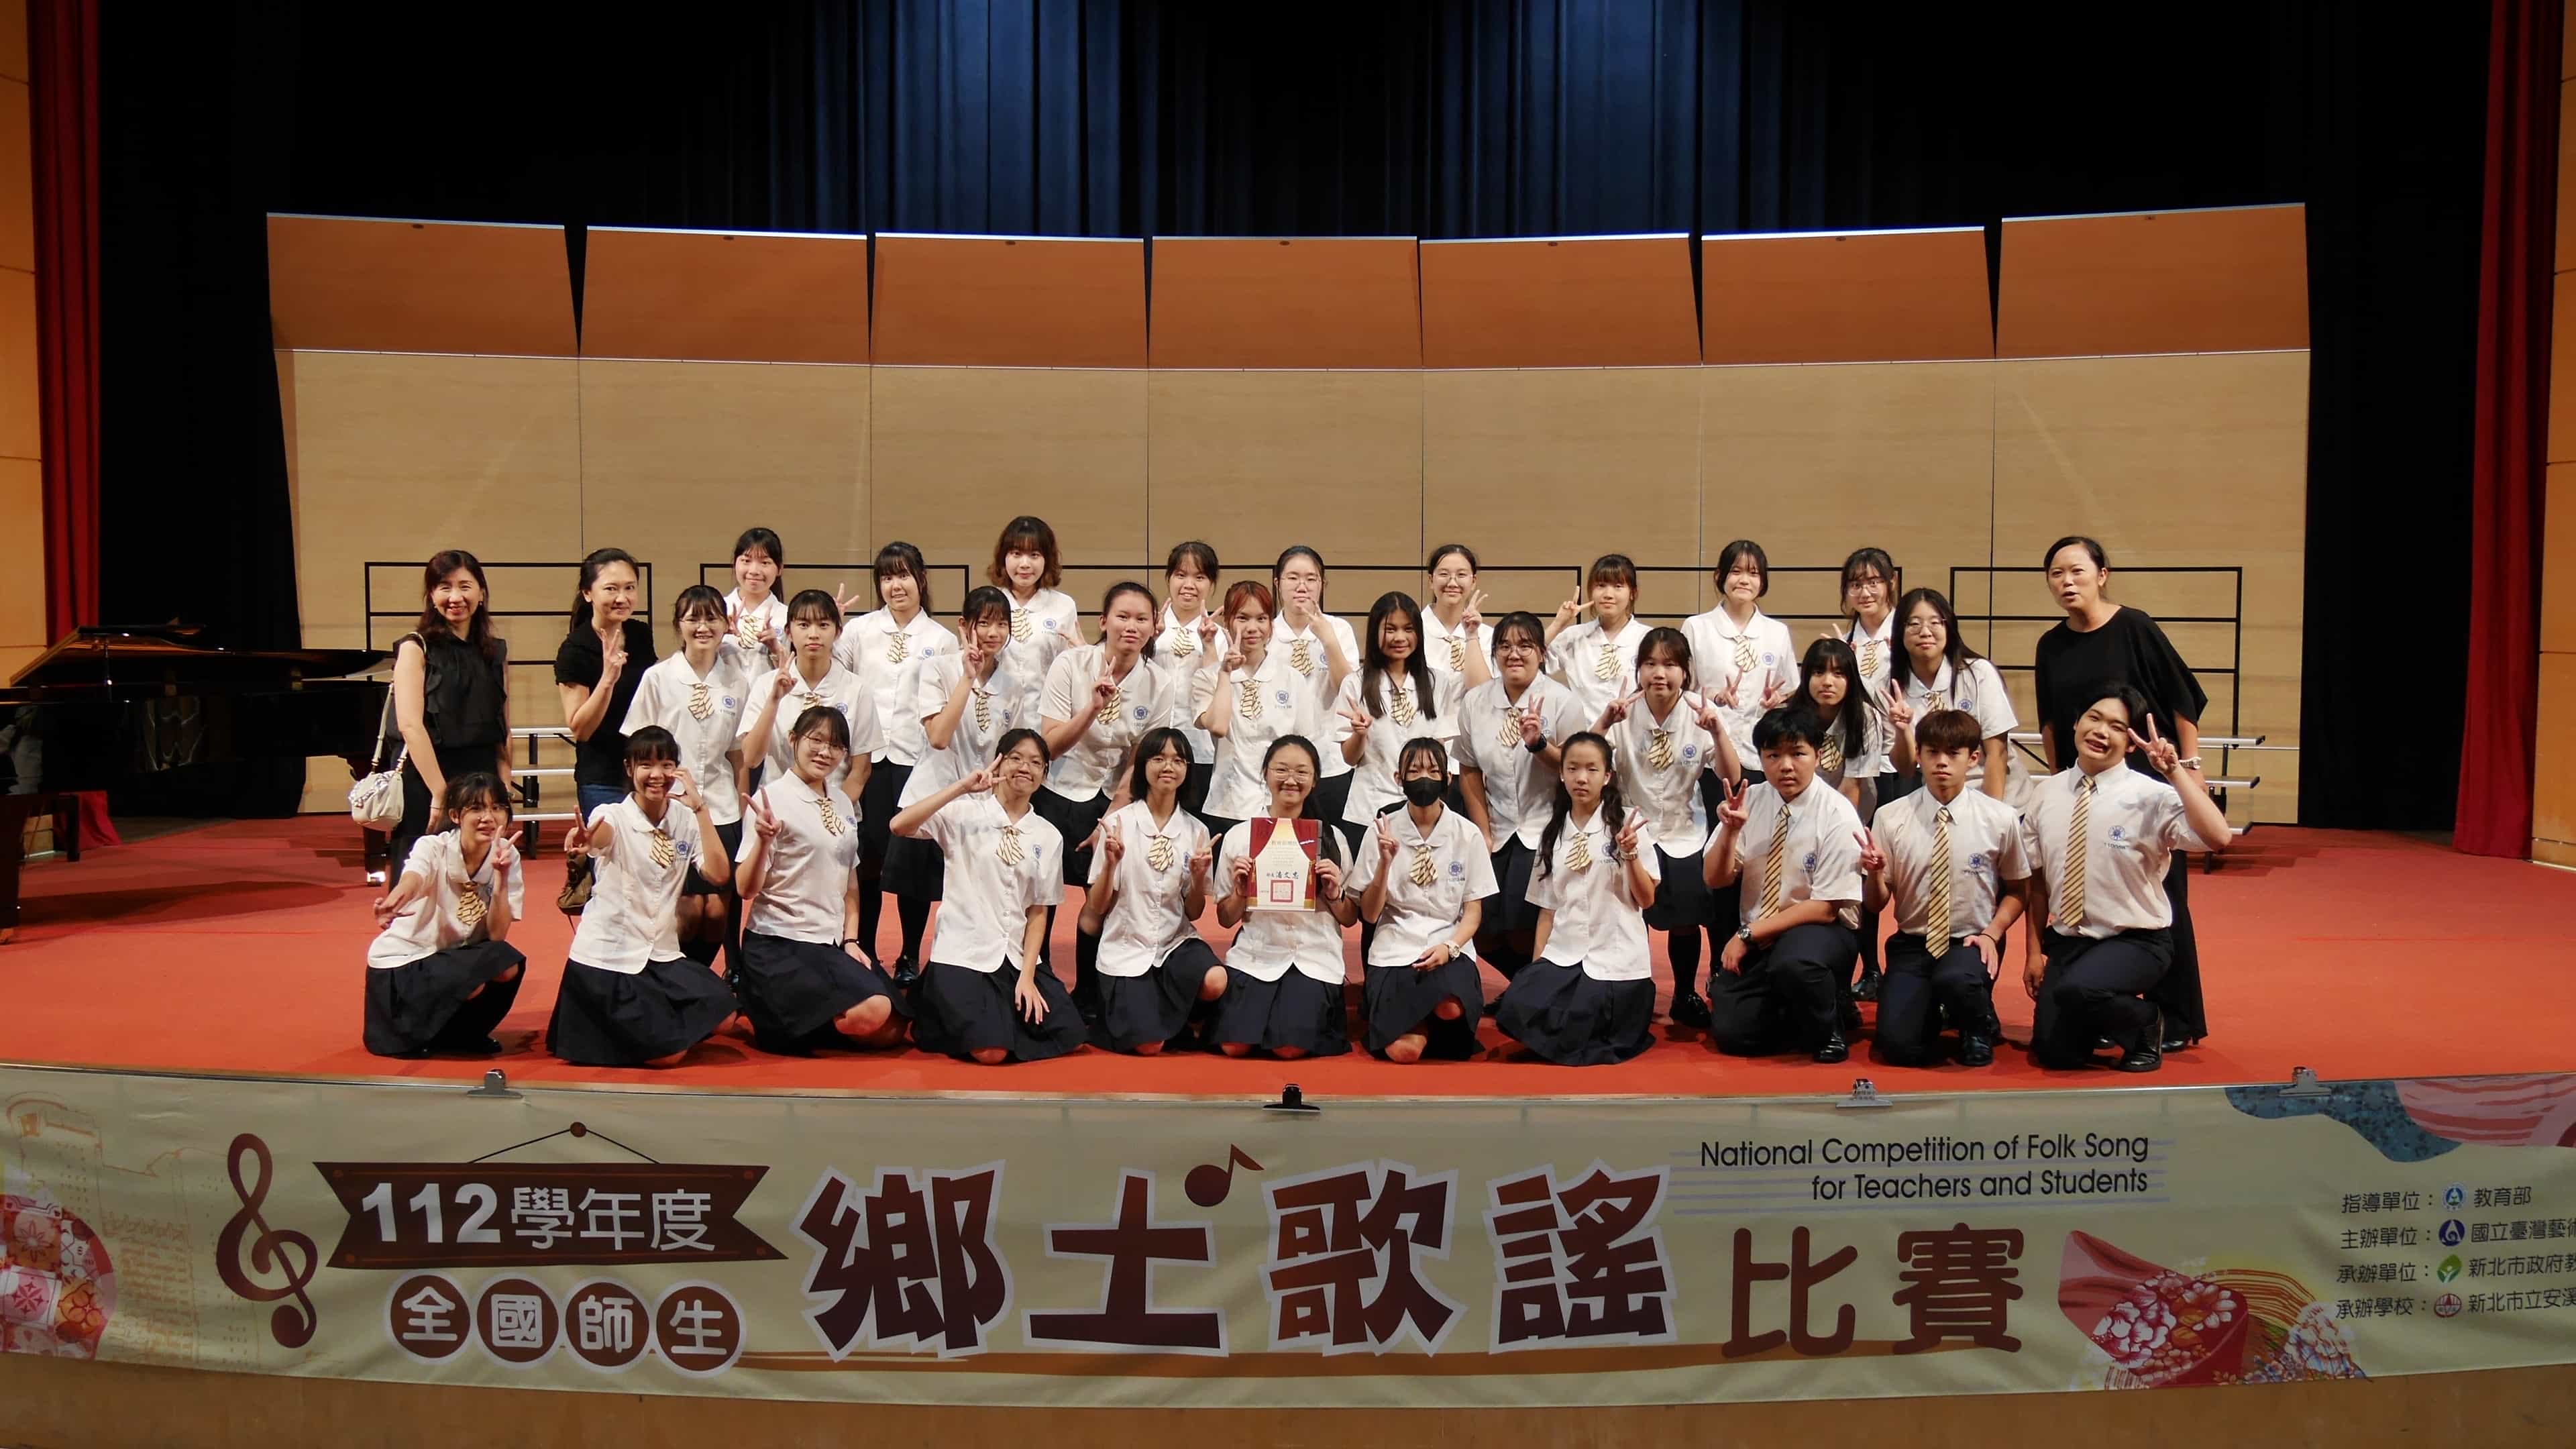 112學年度全國師生鄉土歌謠閩南語系全國決賽